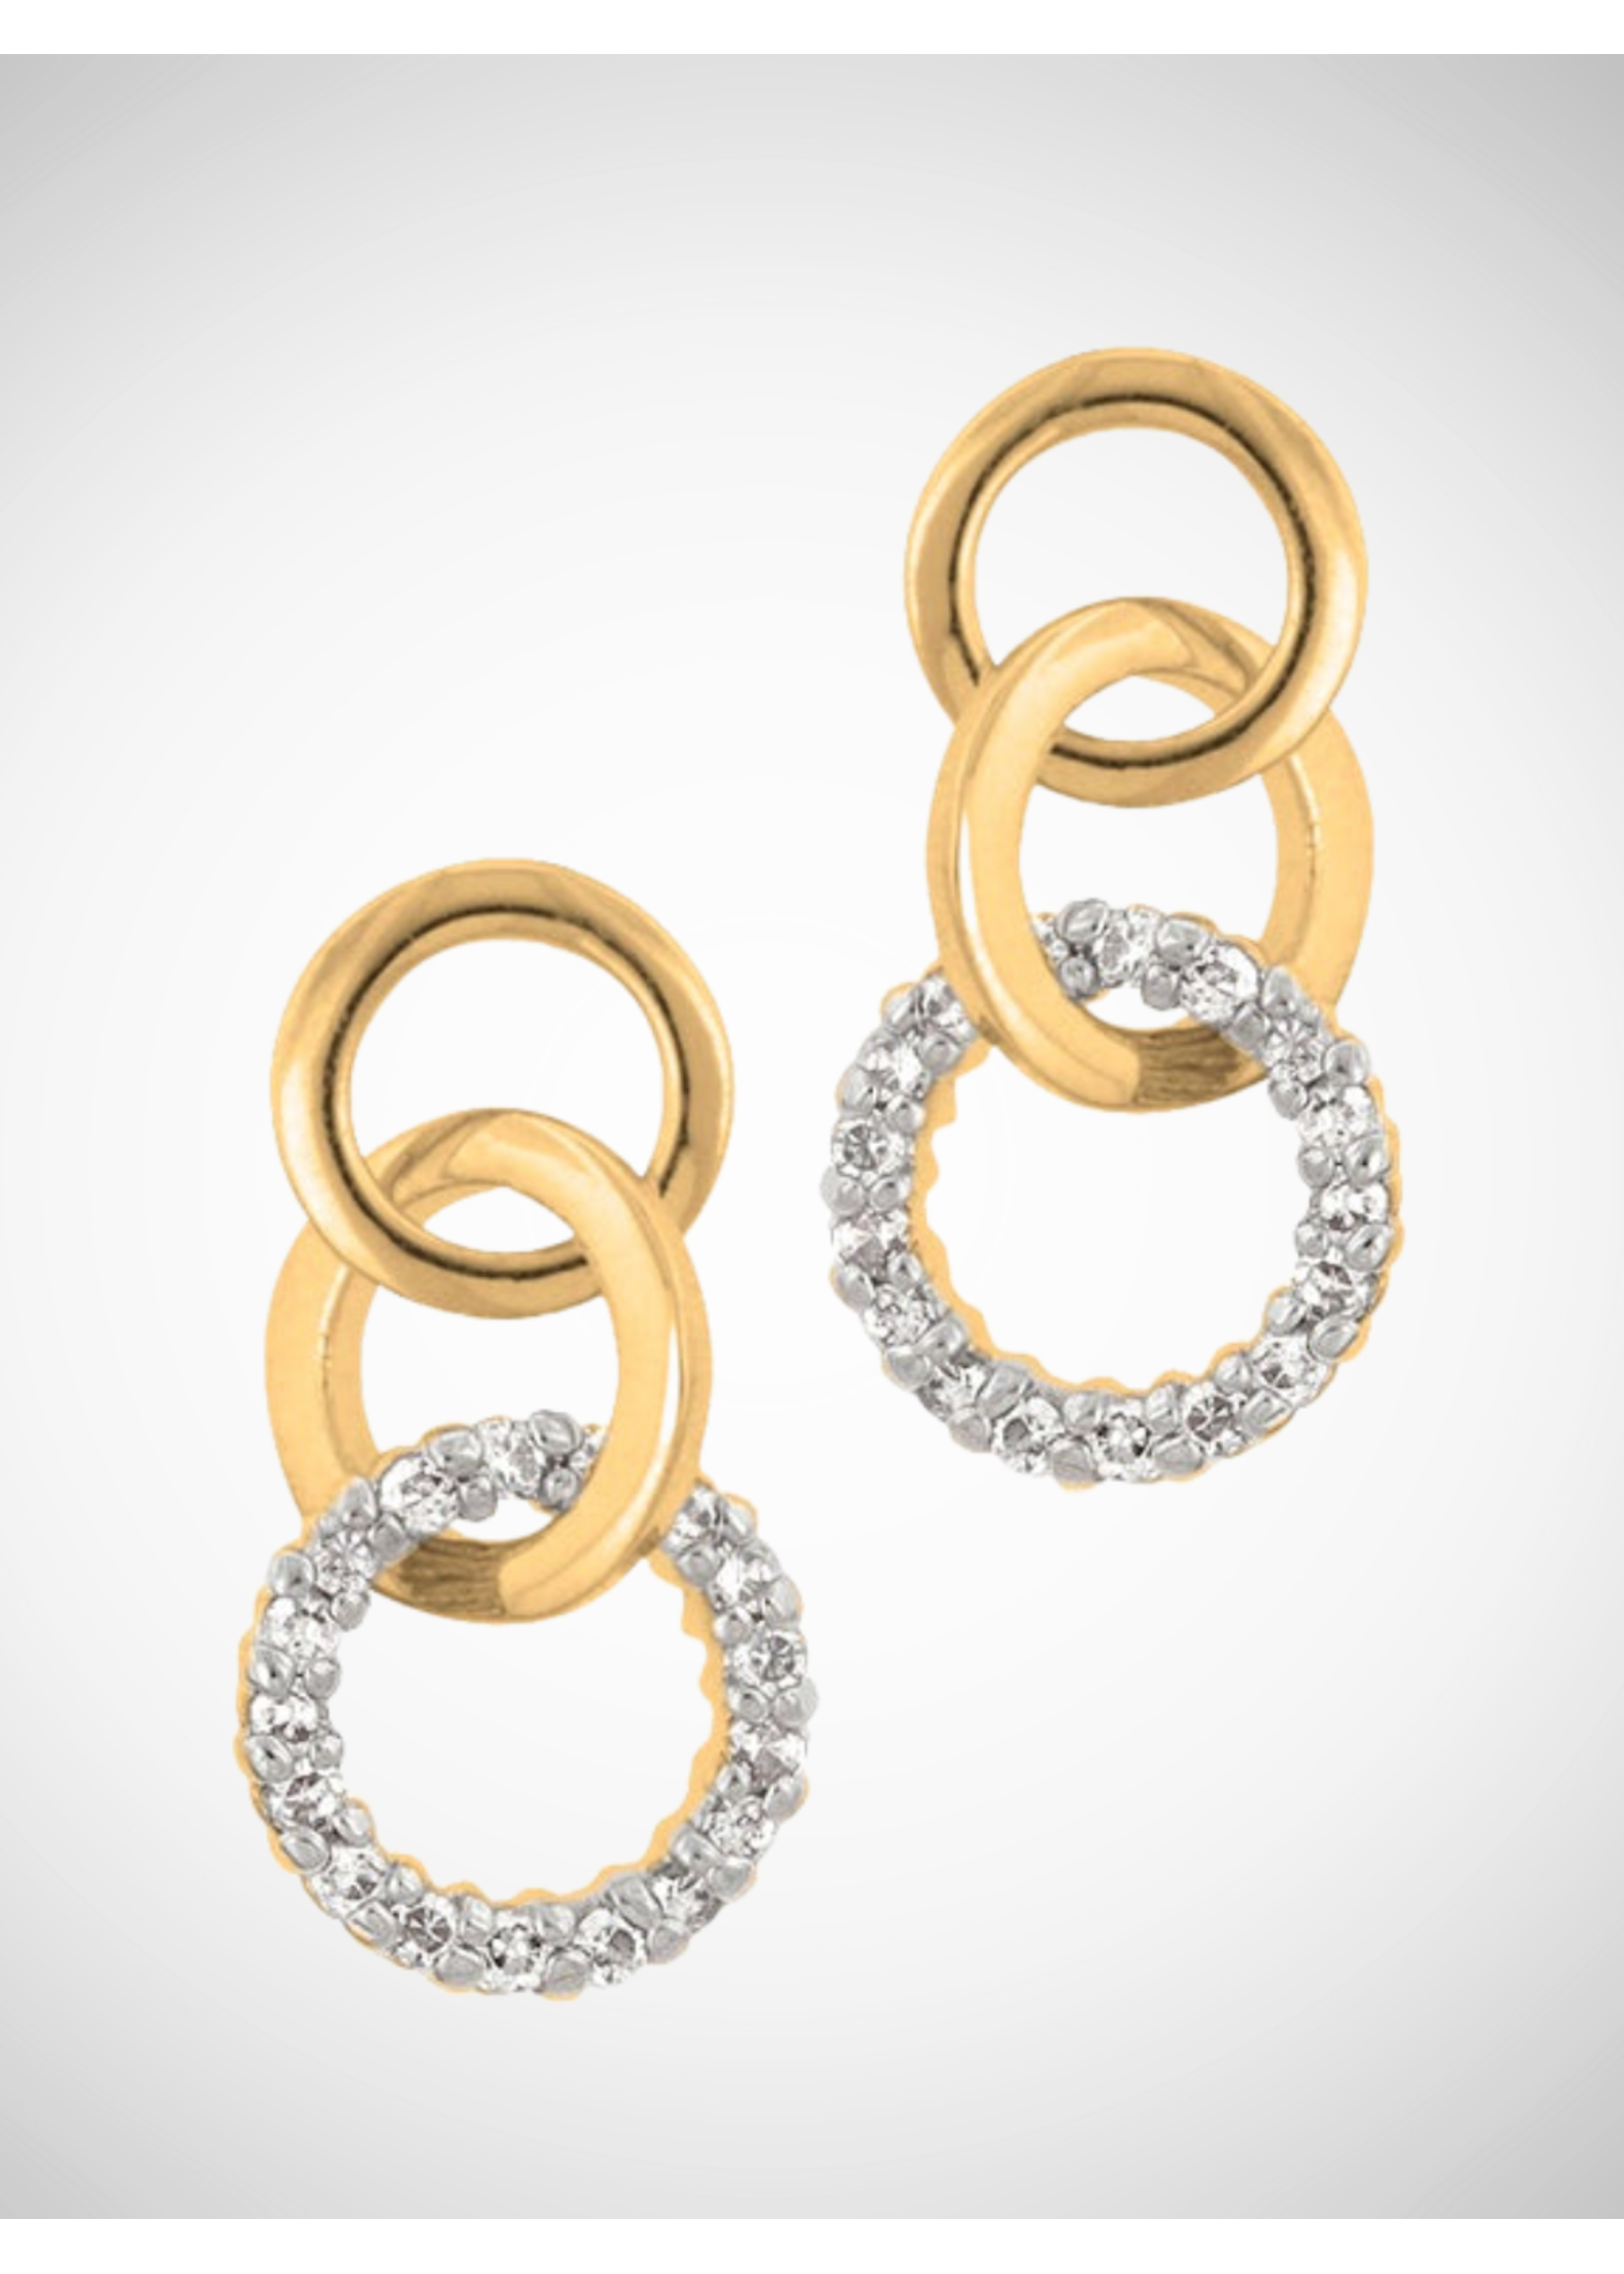 KDesign Regal Collection Triplet Hooplet Earrings